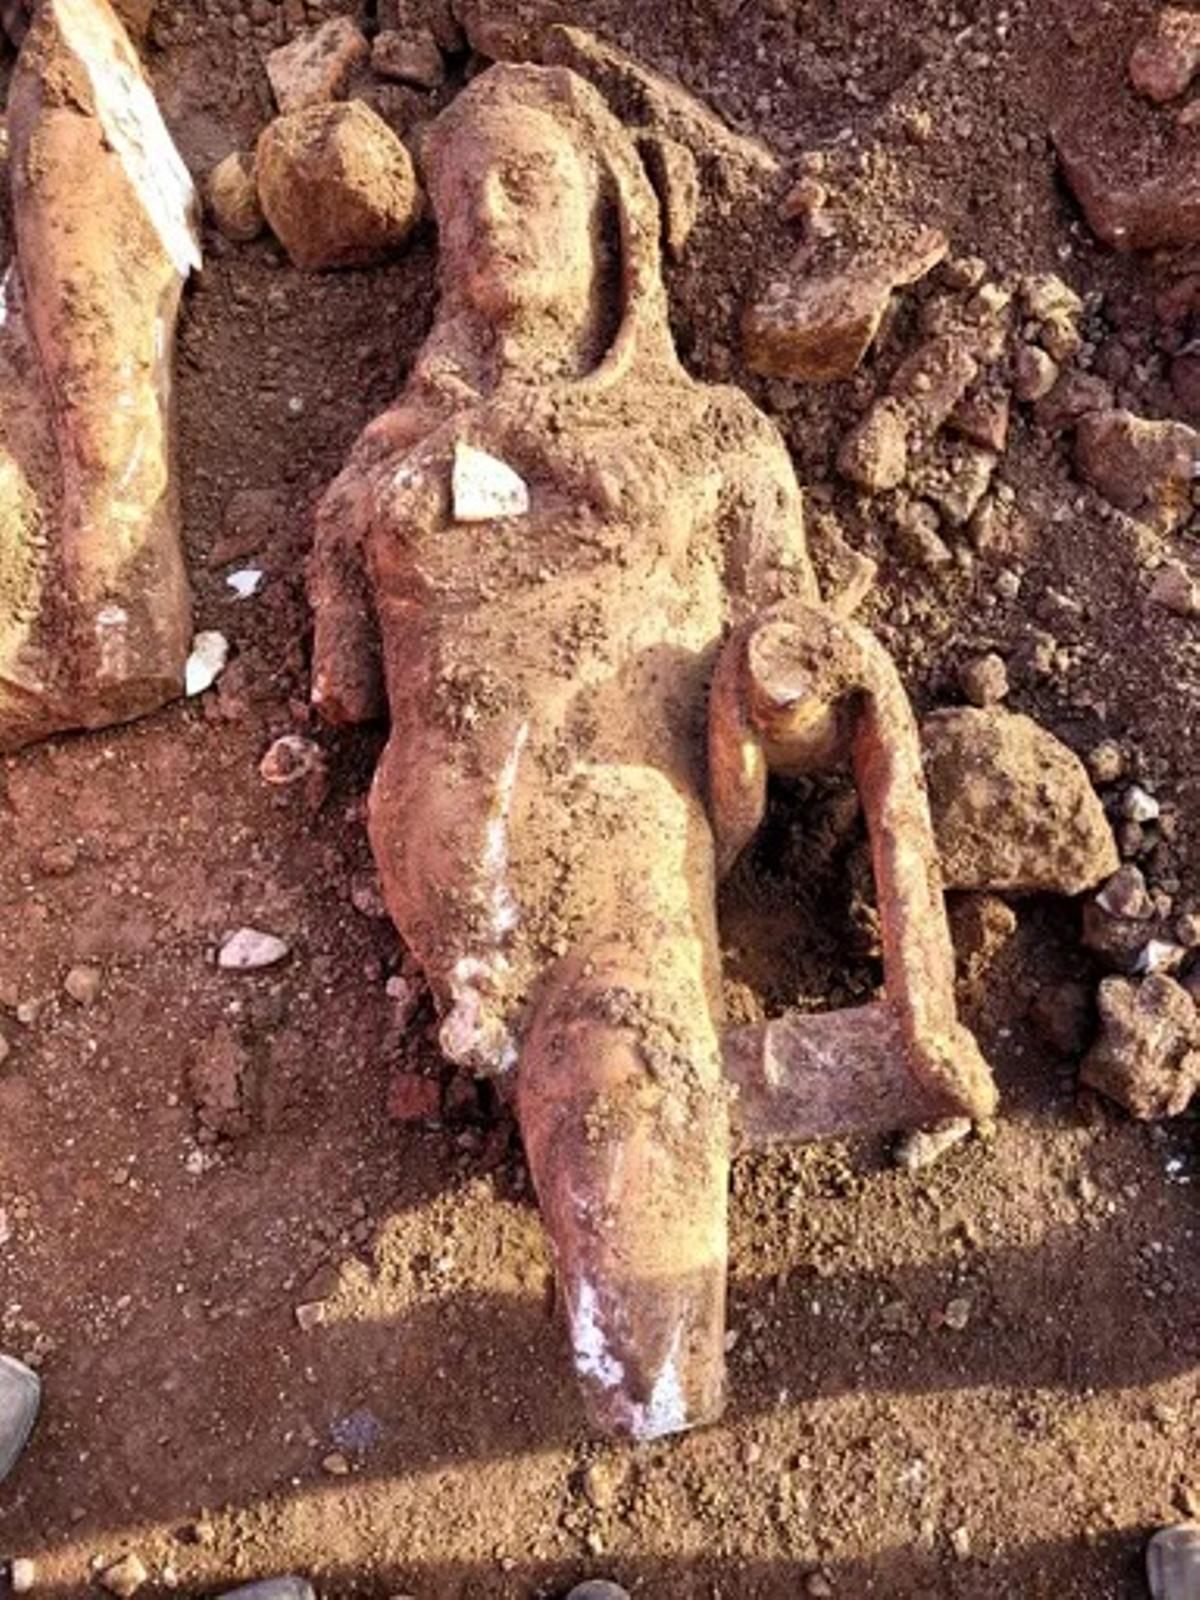 Una antigua estatua de mármol que representa a Hércules sorprendió a un grupo de arqueólogos que realizaba una excavación en el Parque Scott de Roma para reparar el alcantarillado en la zona sur de la ciudad, tras el hundimiento de una tubería. EFE/Parque Arqueológico Appia Antica